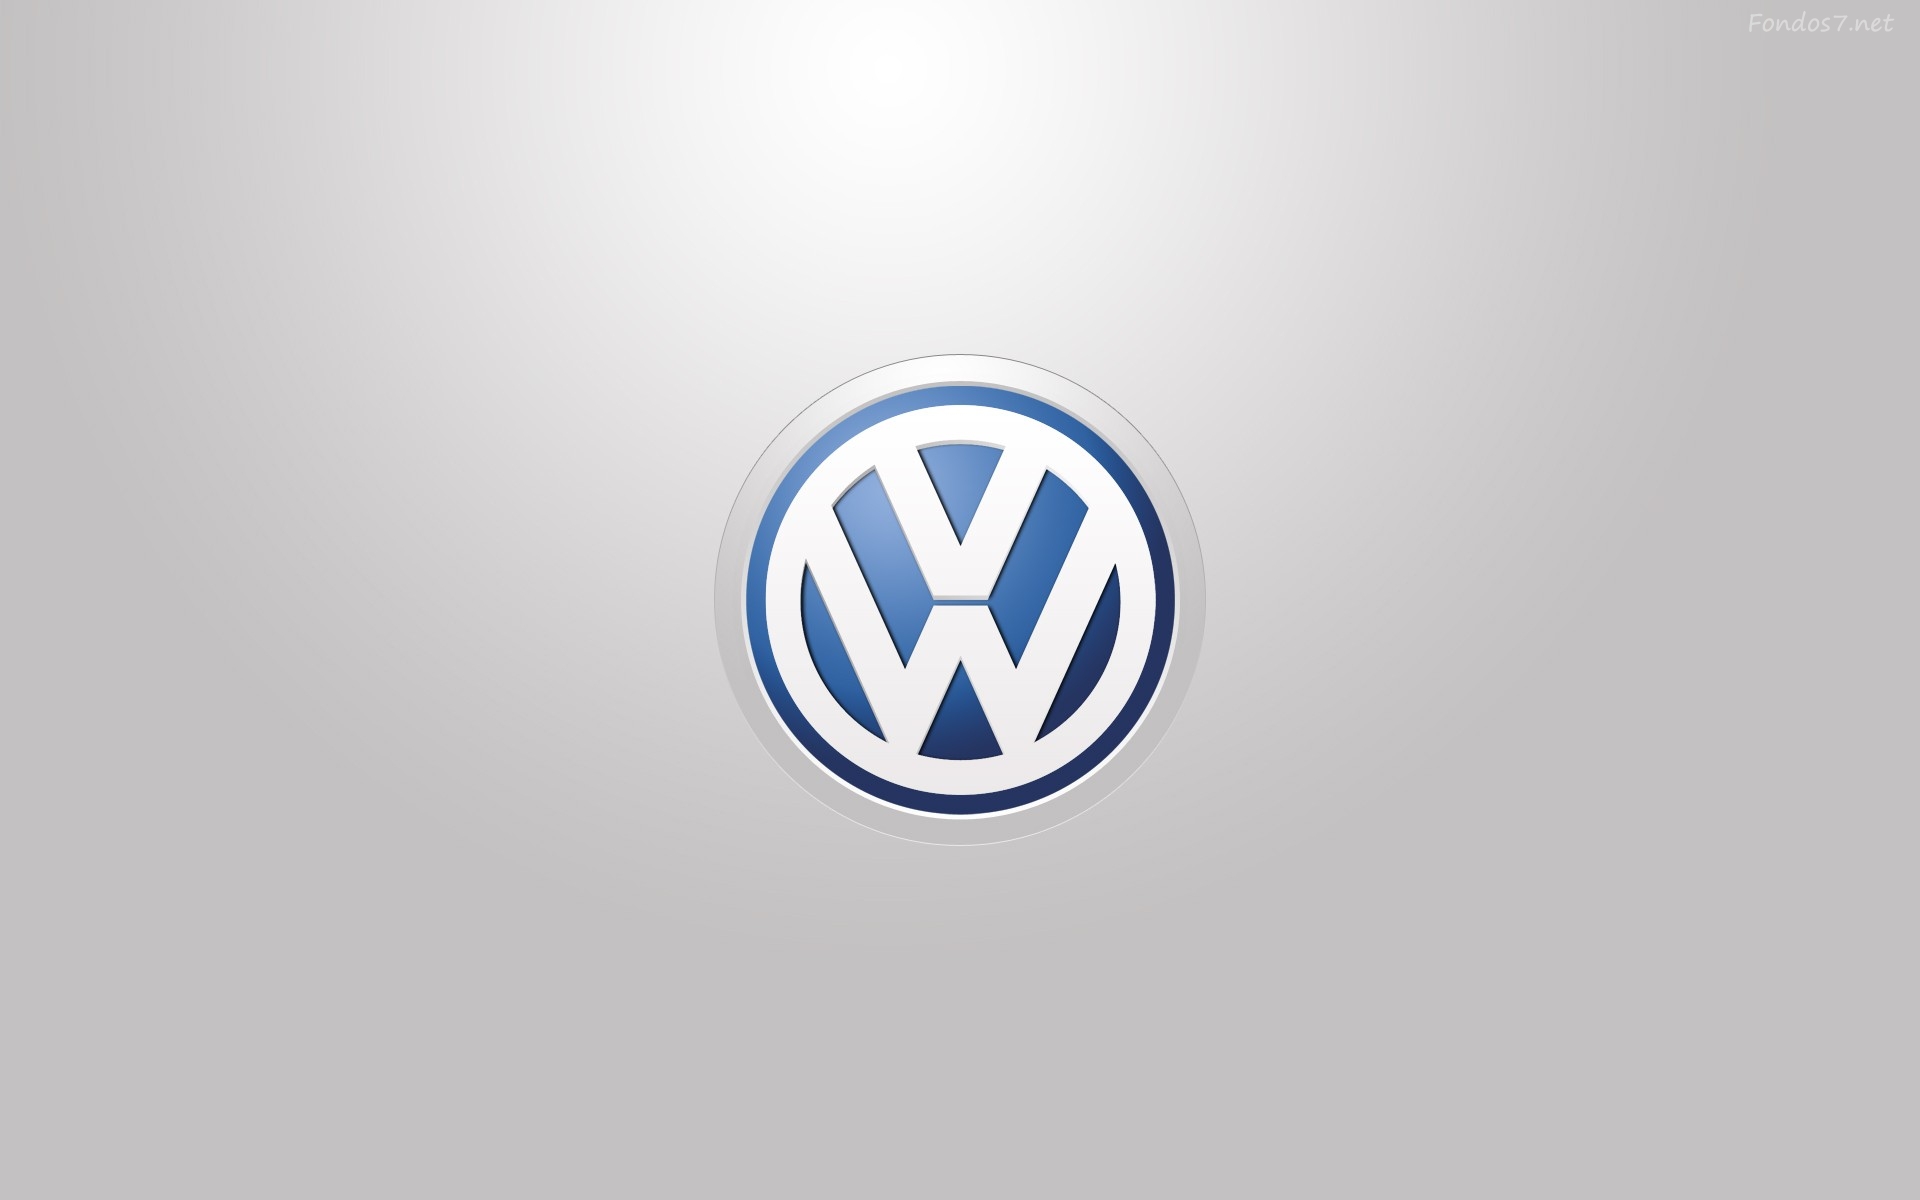 Descargar Fondos de pantalla volkswagen logo hd widescreen Gratis